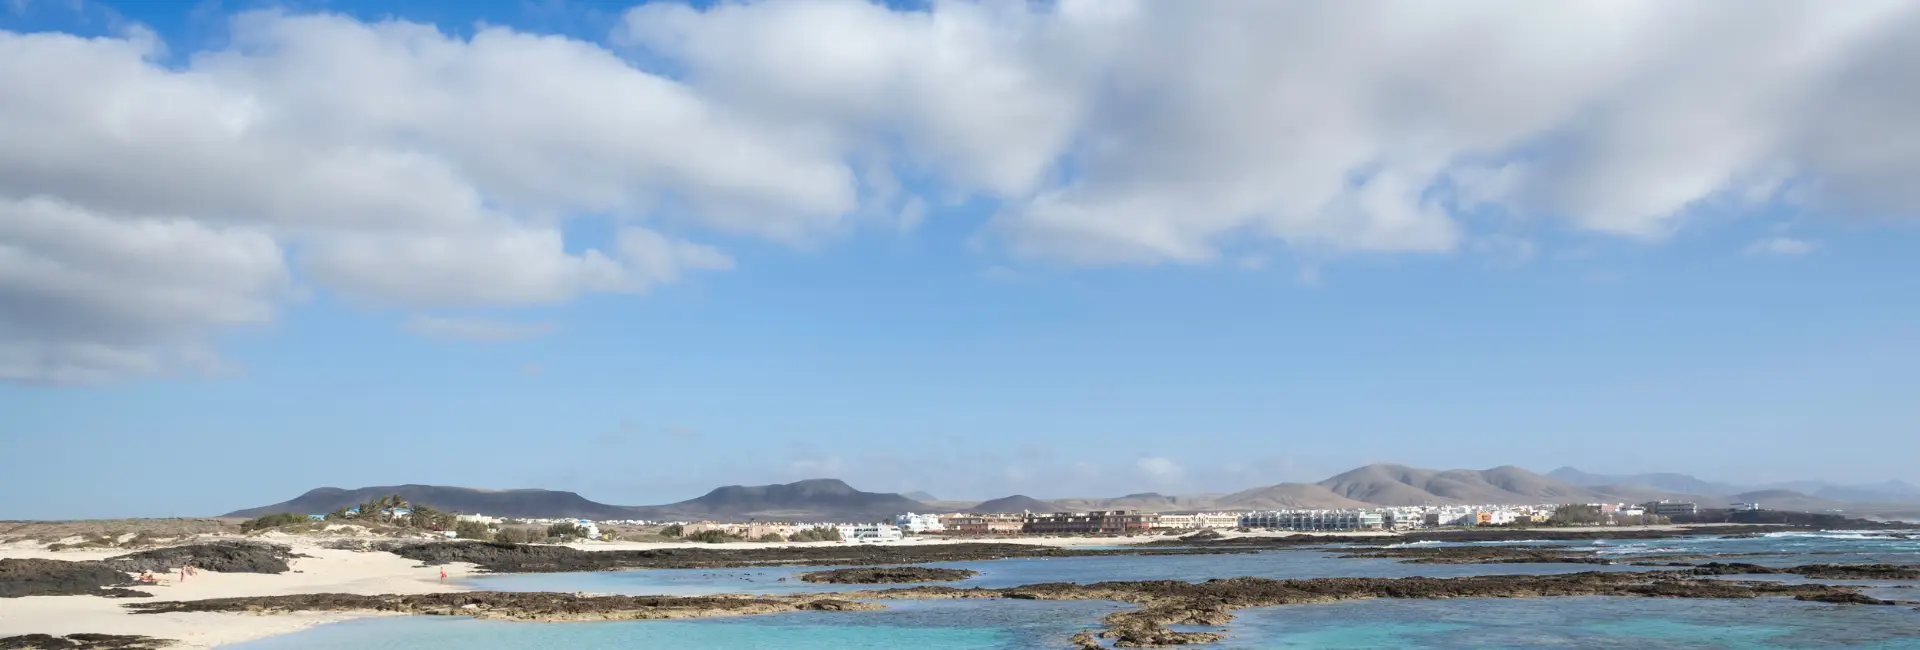 Revelion Insula Fuerteventura